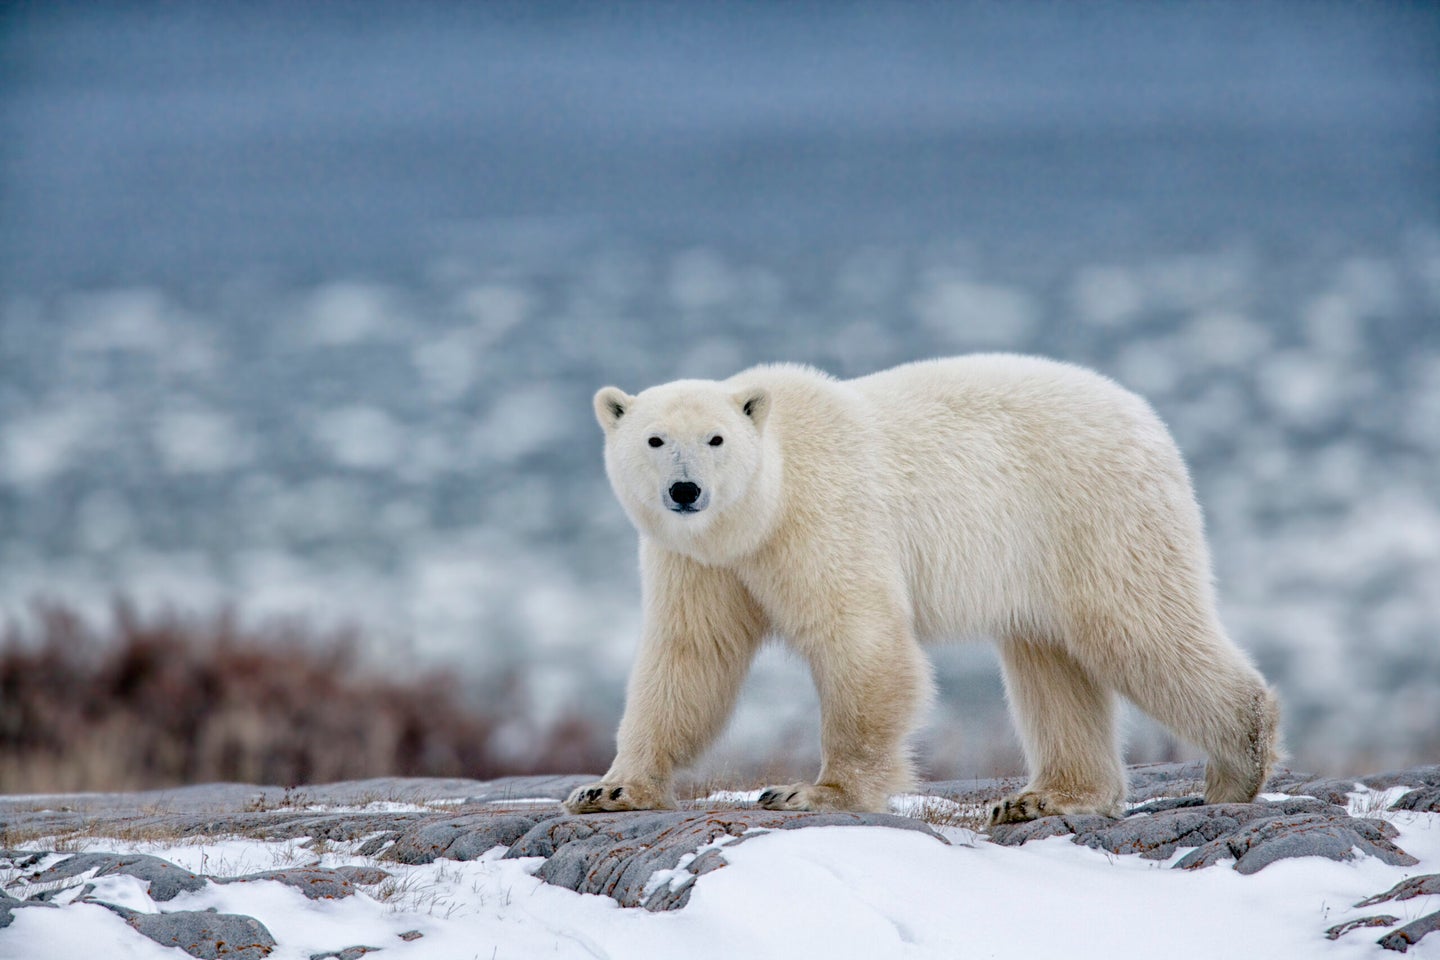 polar bear walks on snowy ground